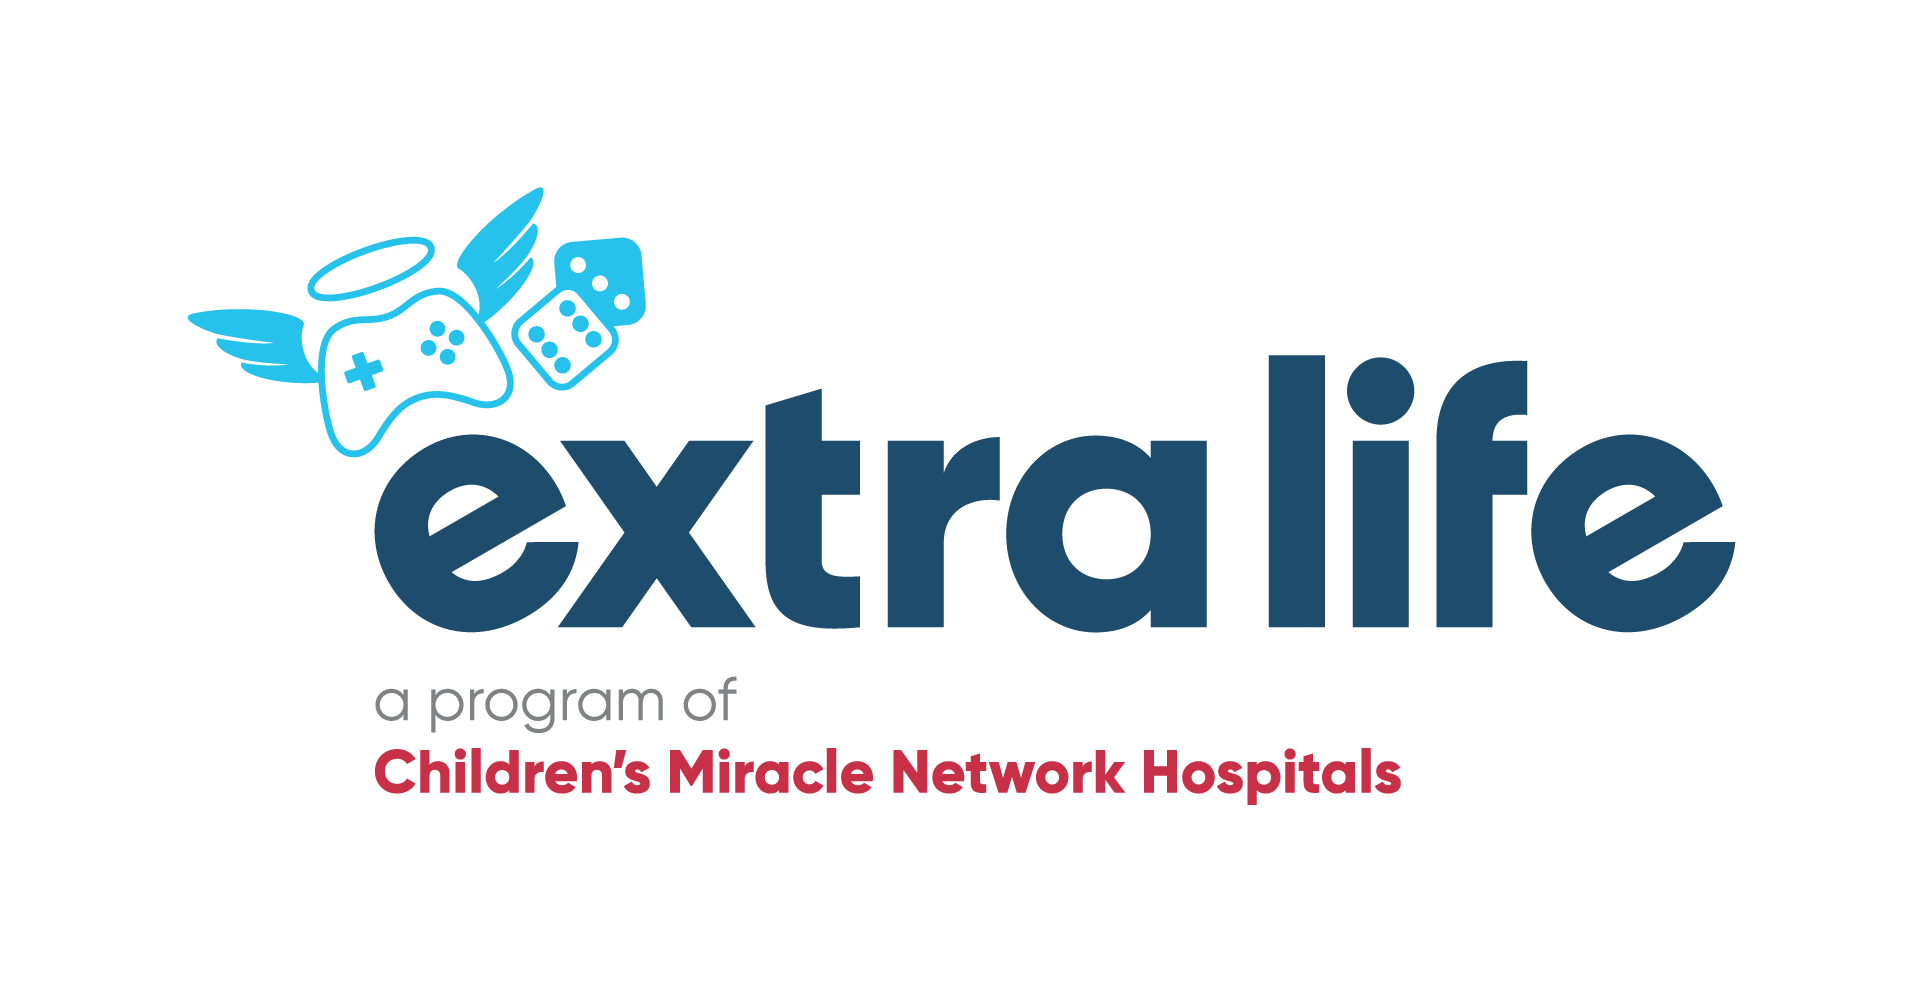 Extra Life Logo